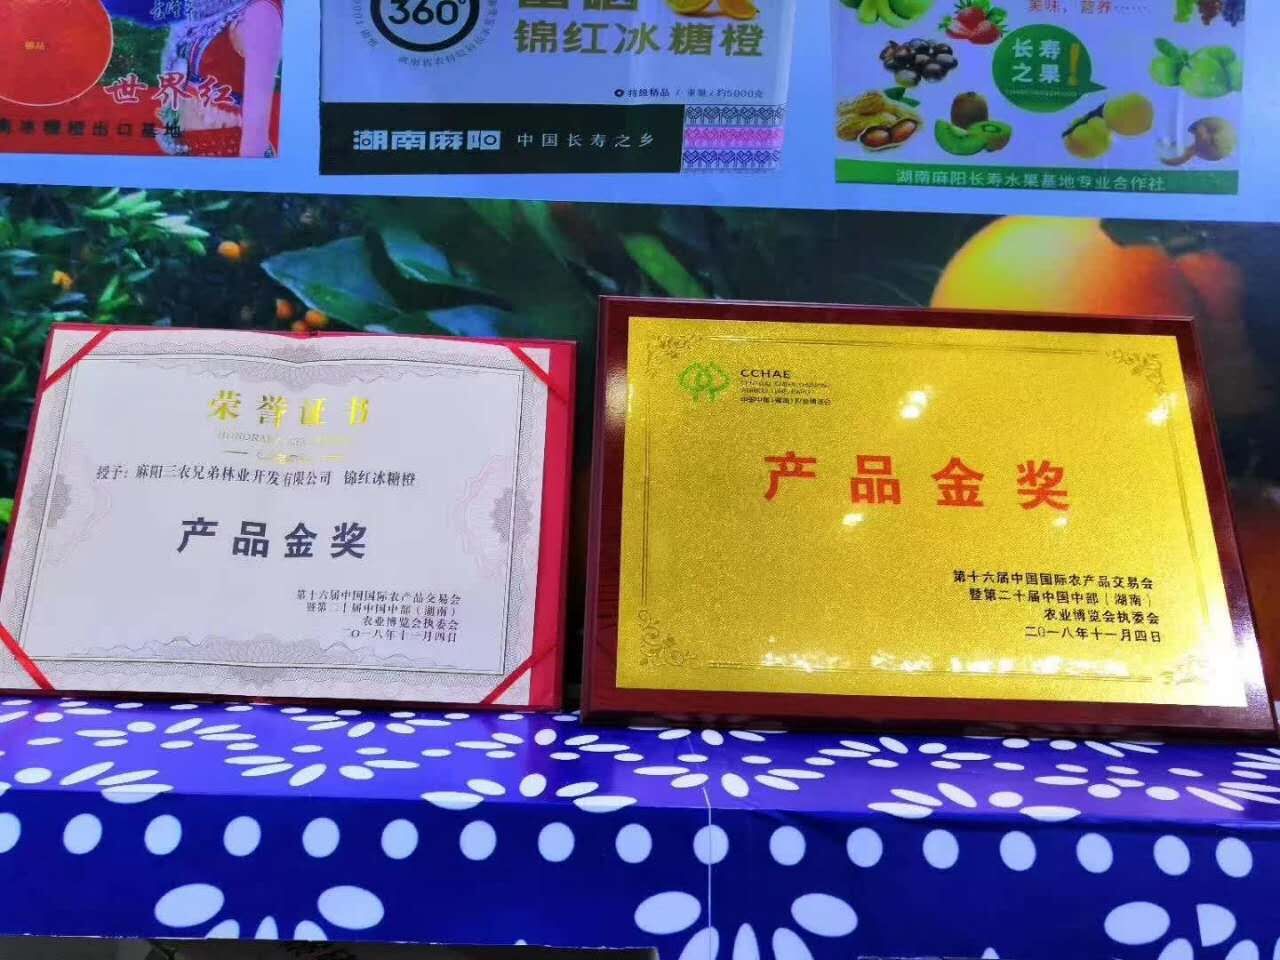 锦红冰糖橙荣获农业博览会金奖